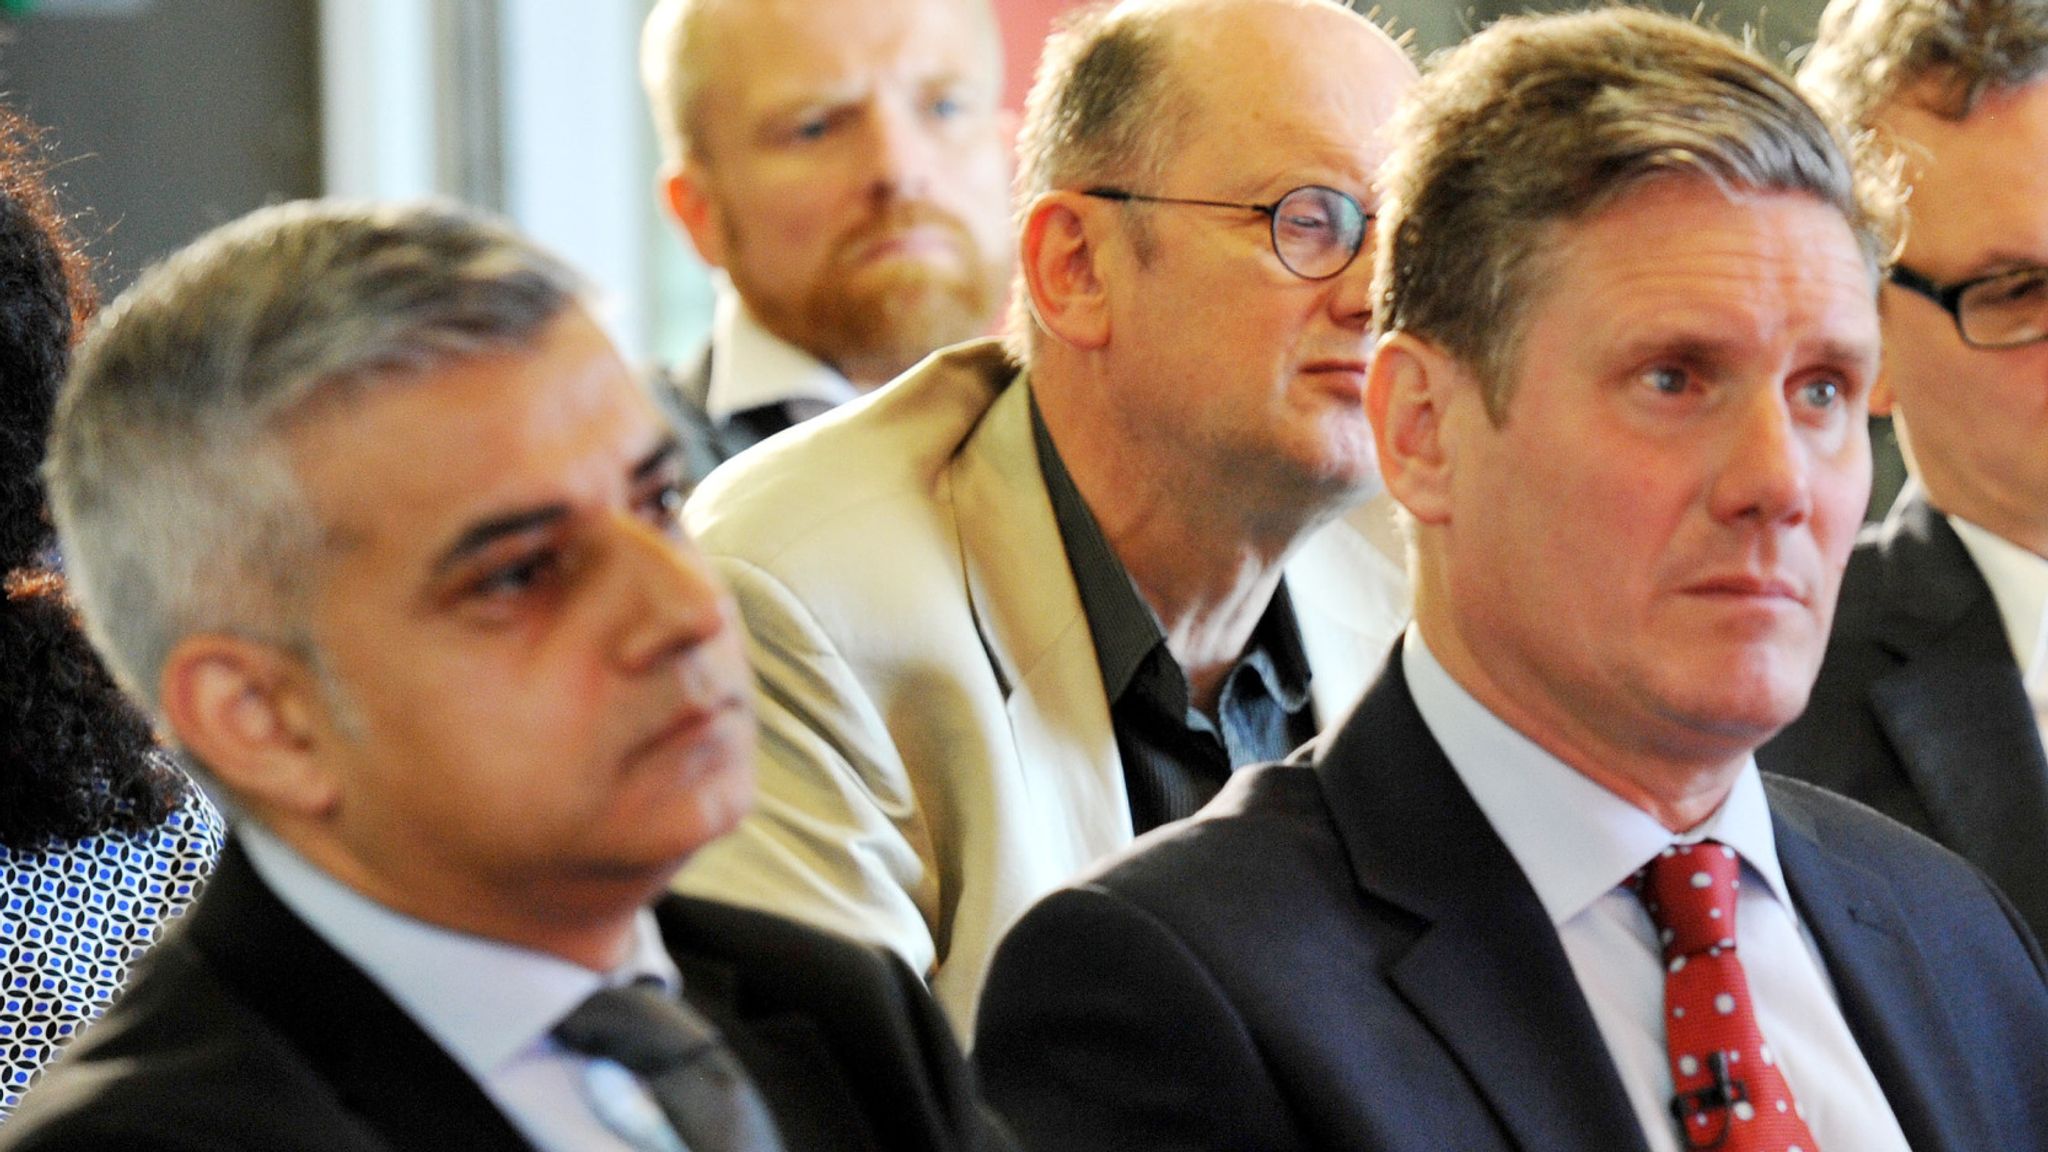 London mayor Sadiq Khan backs Sir Keir Starmer for Labour leadership ...